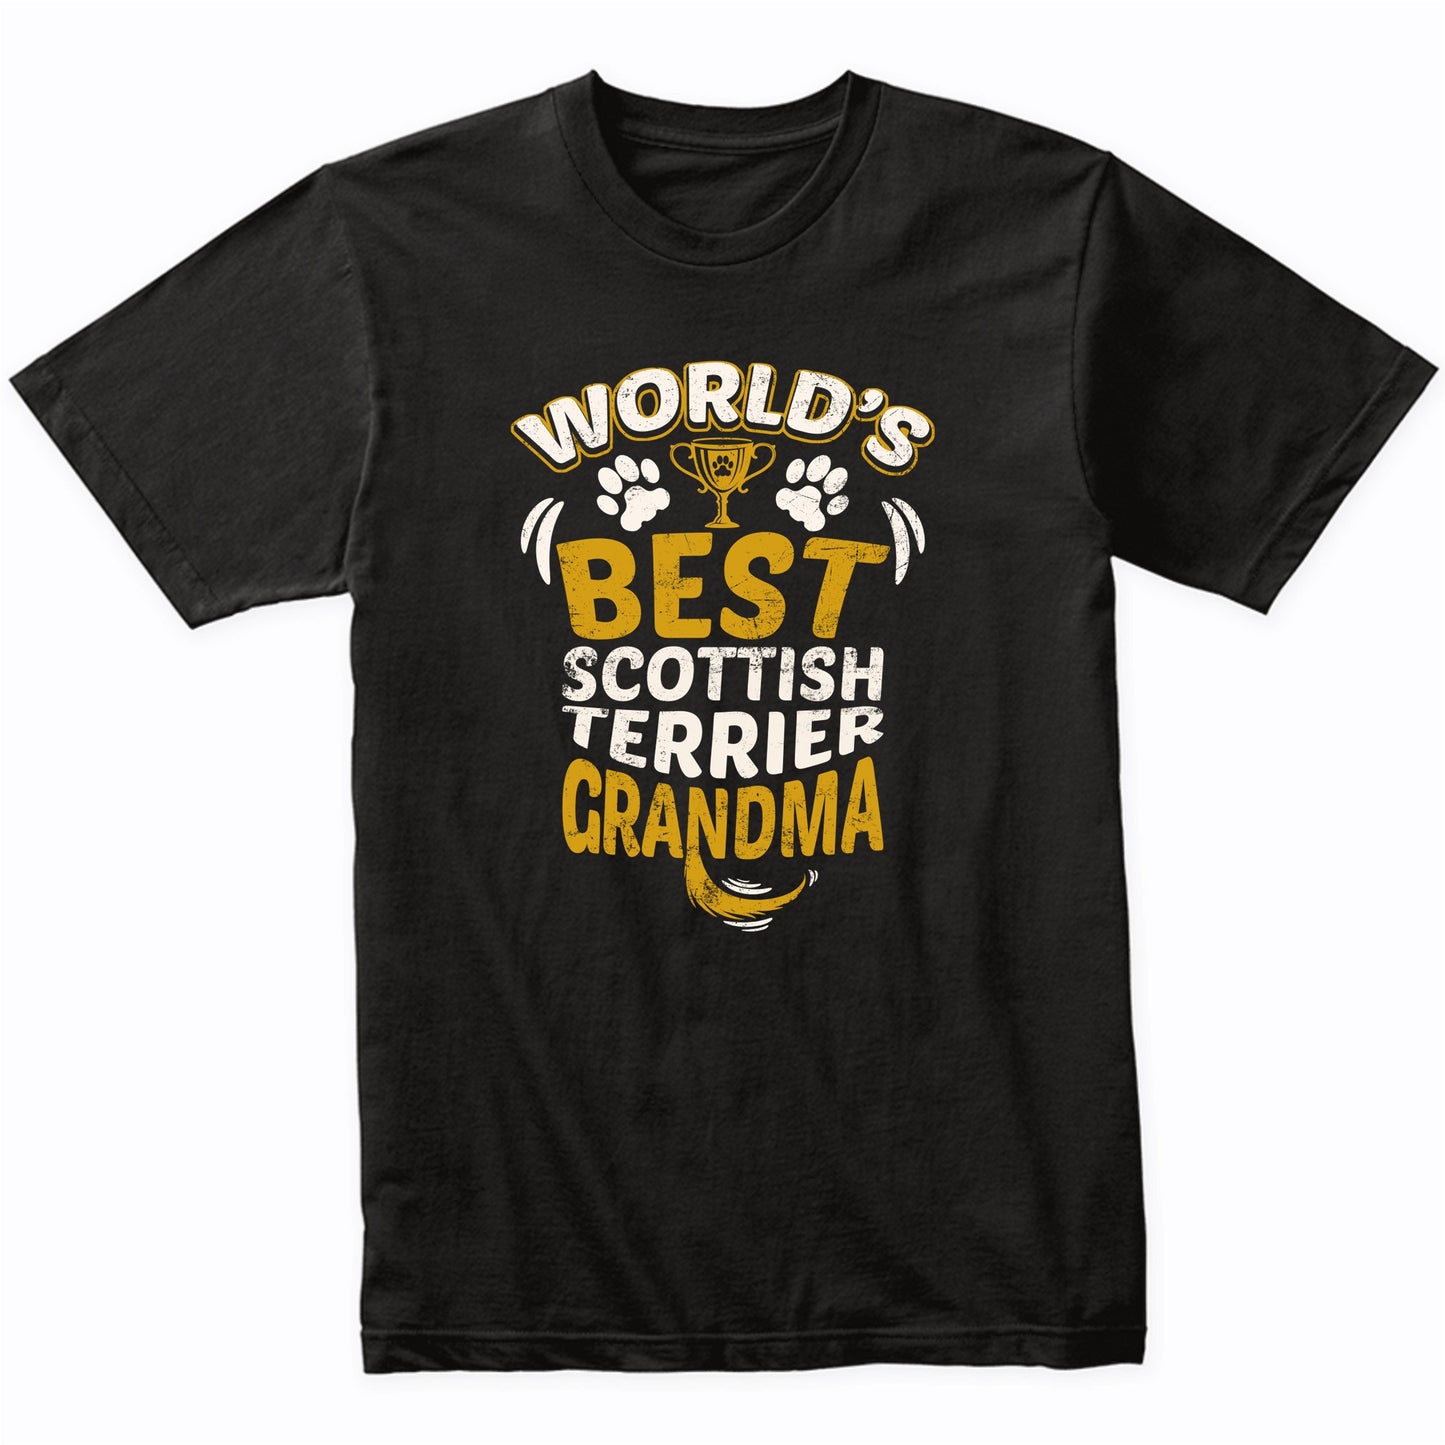 World's Best Scottish Terrier Grandma Graphic T-Shirt